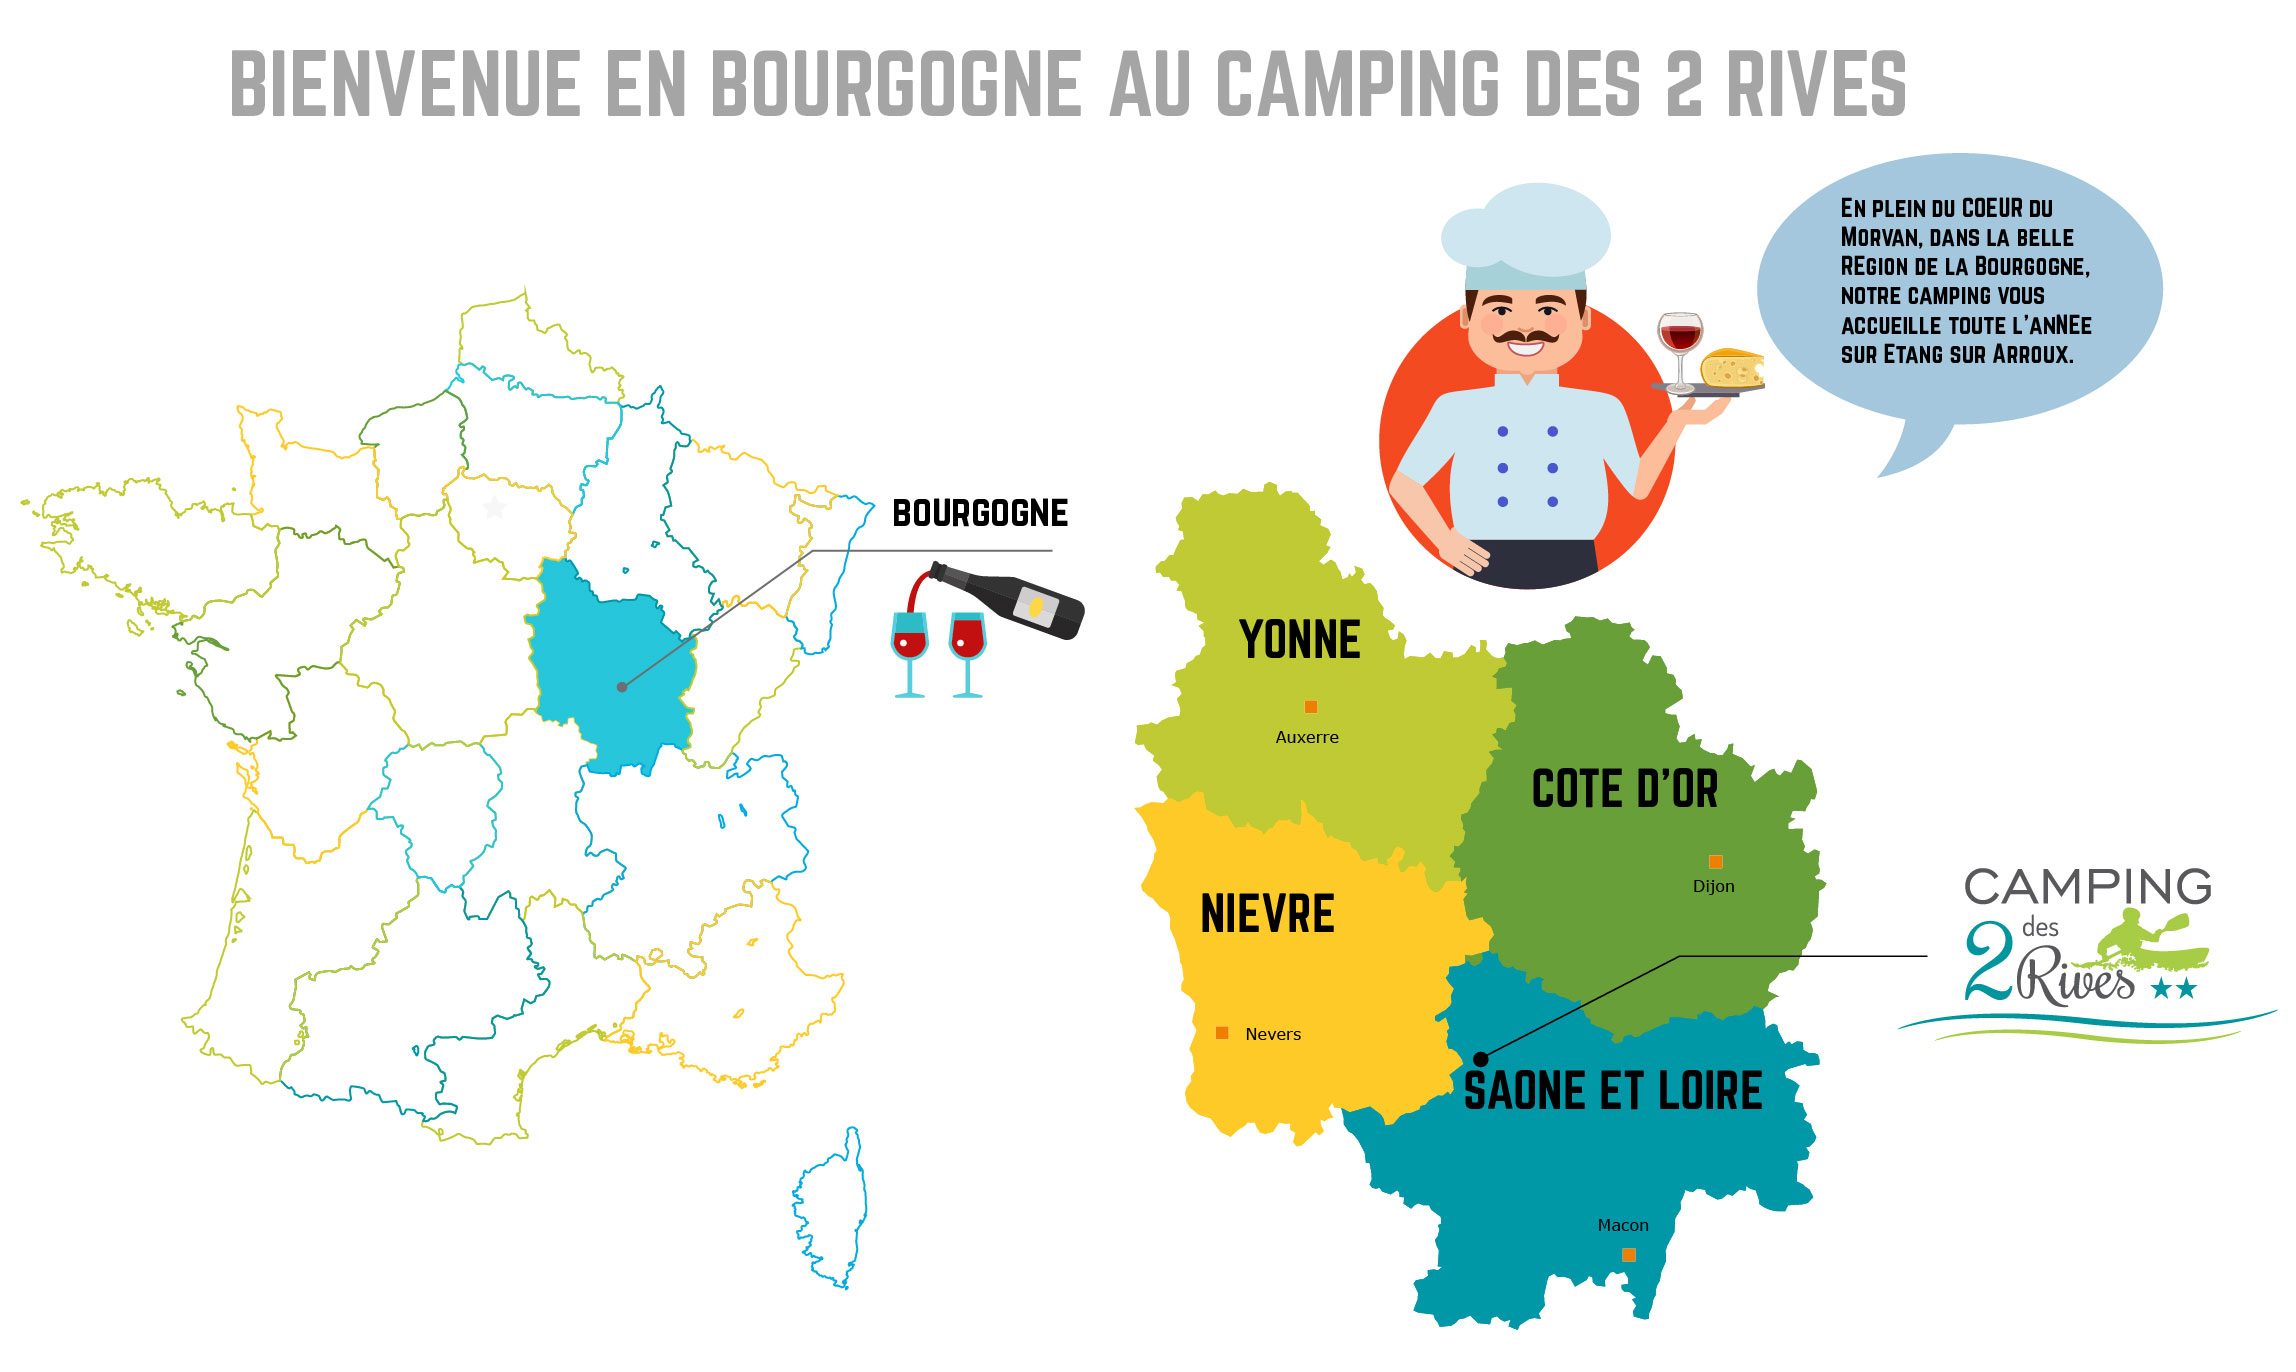 Bourgogne: riche en culture & gastronomie